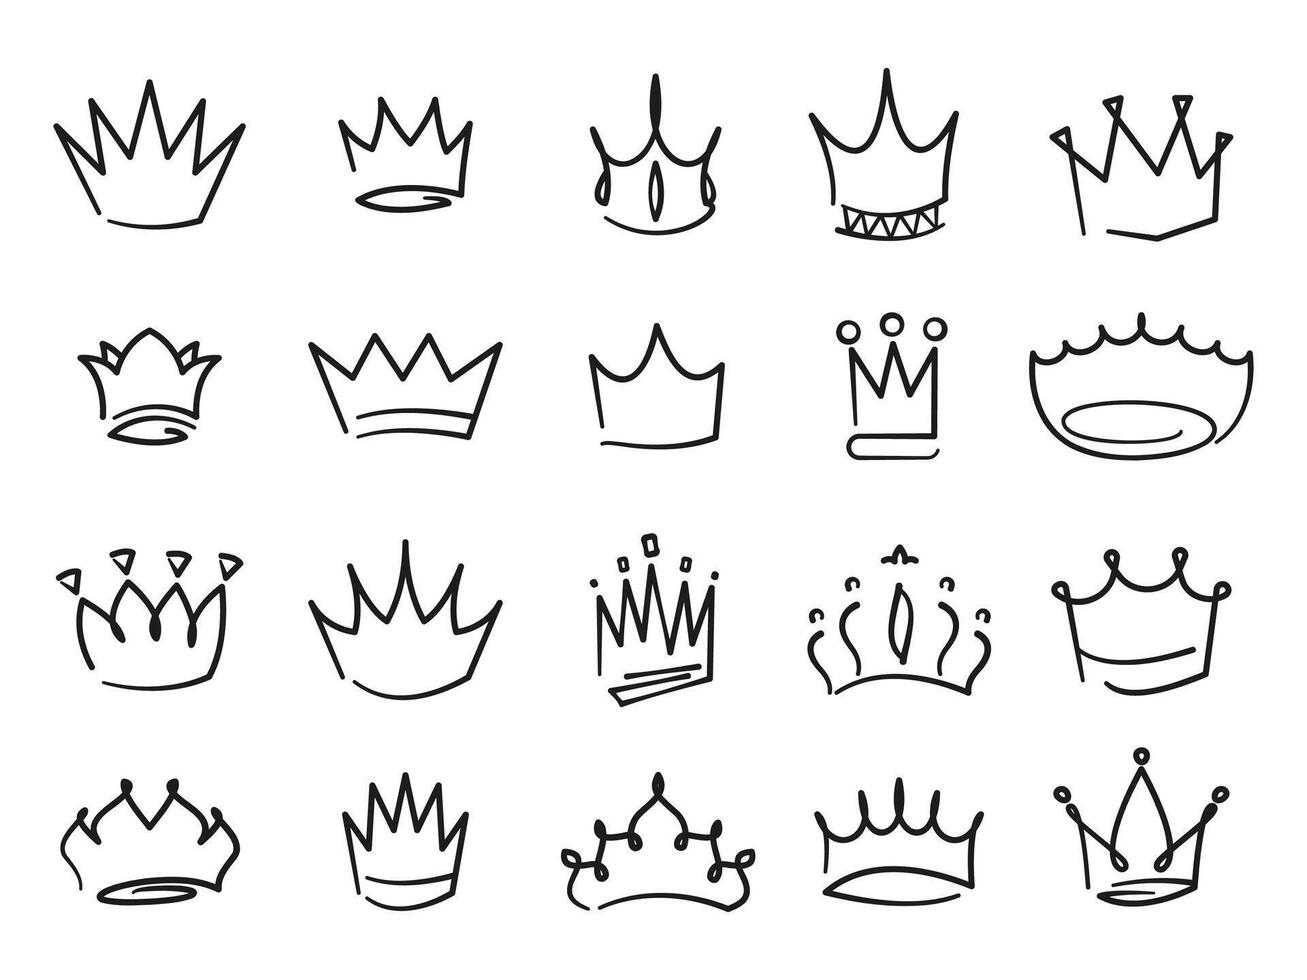 tekening kronen. middeleeuws Koninklijk kronen met inscripties en kalligrafie, hand- getrokken luxe juweel monarch pictogrammen voor logo ontwerp. vector reeks